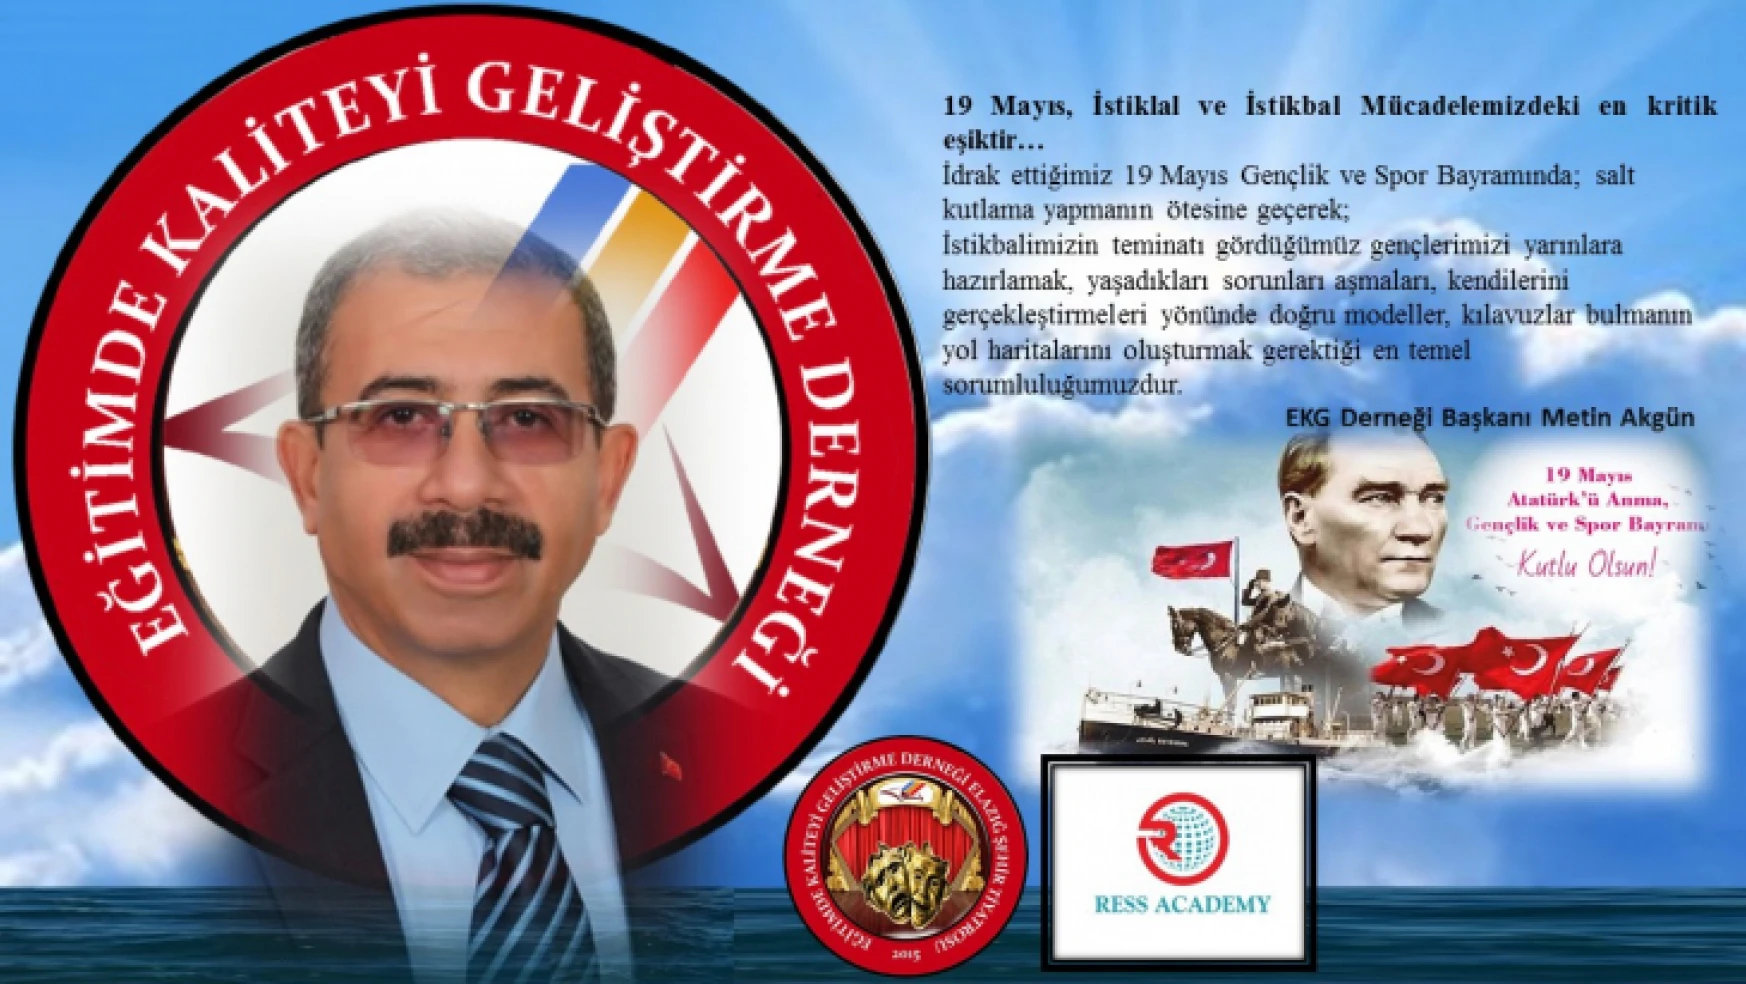 EKG Derneği Başkanı Akgün'ün, 19 Mayıs Gençlik ve Spor Bayramı Kutlama Mesajı.